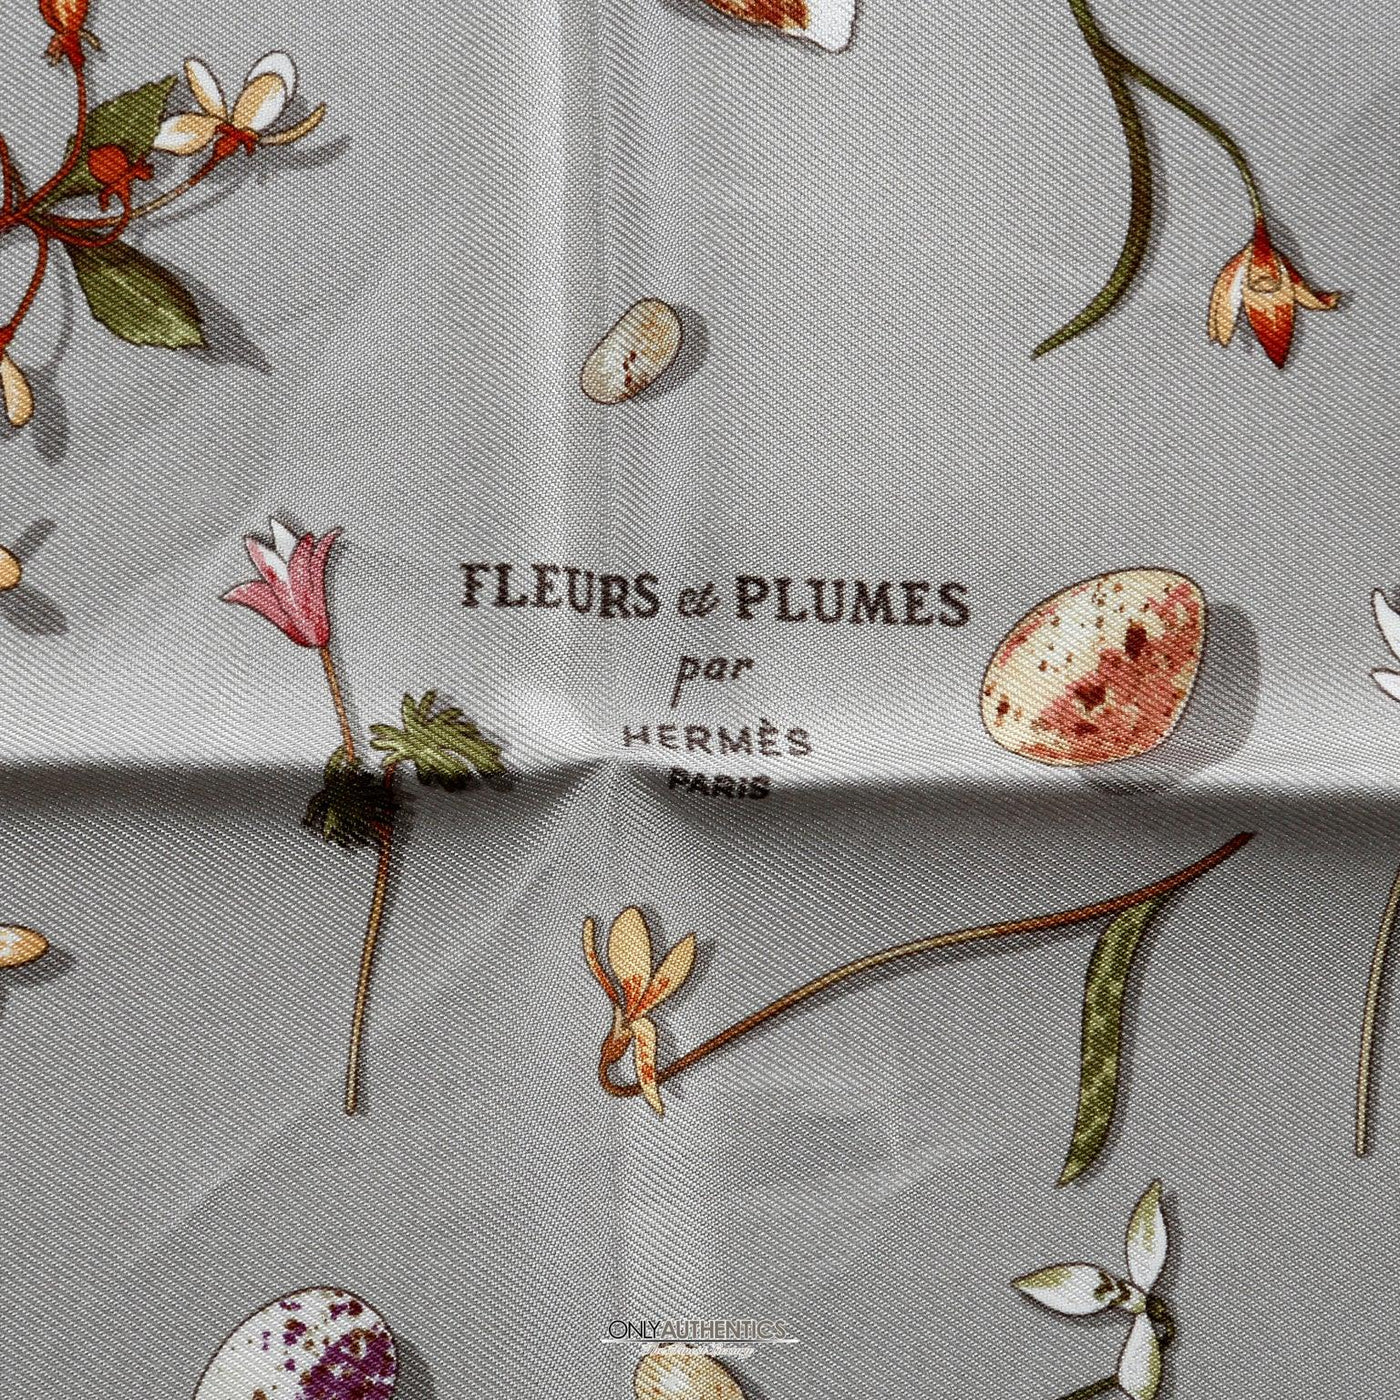 Hermès Grey Silk Fleurs et Plumes Scarf - Only Authentics